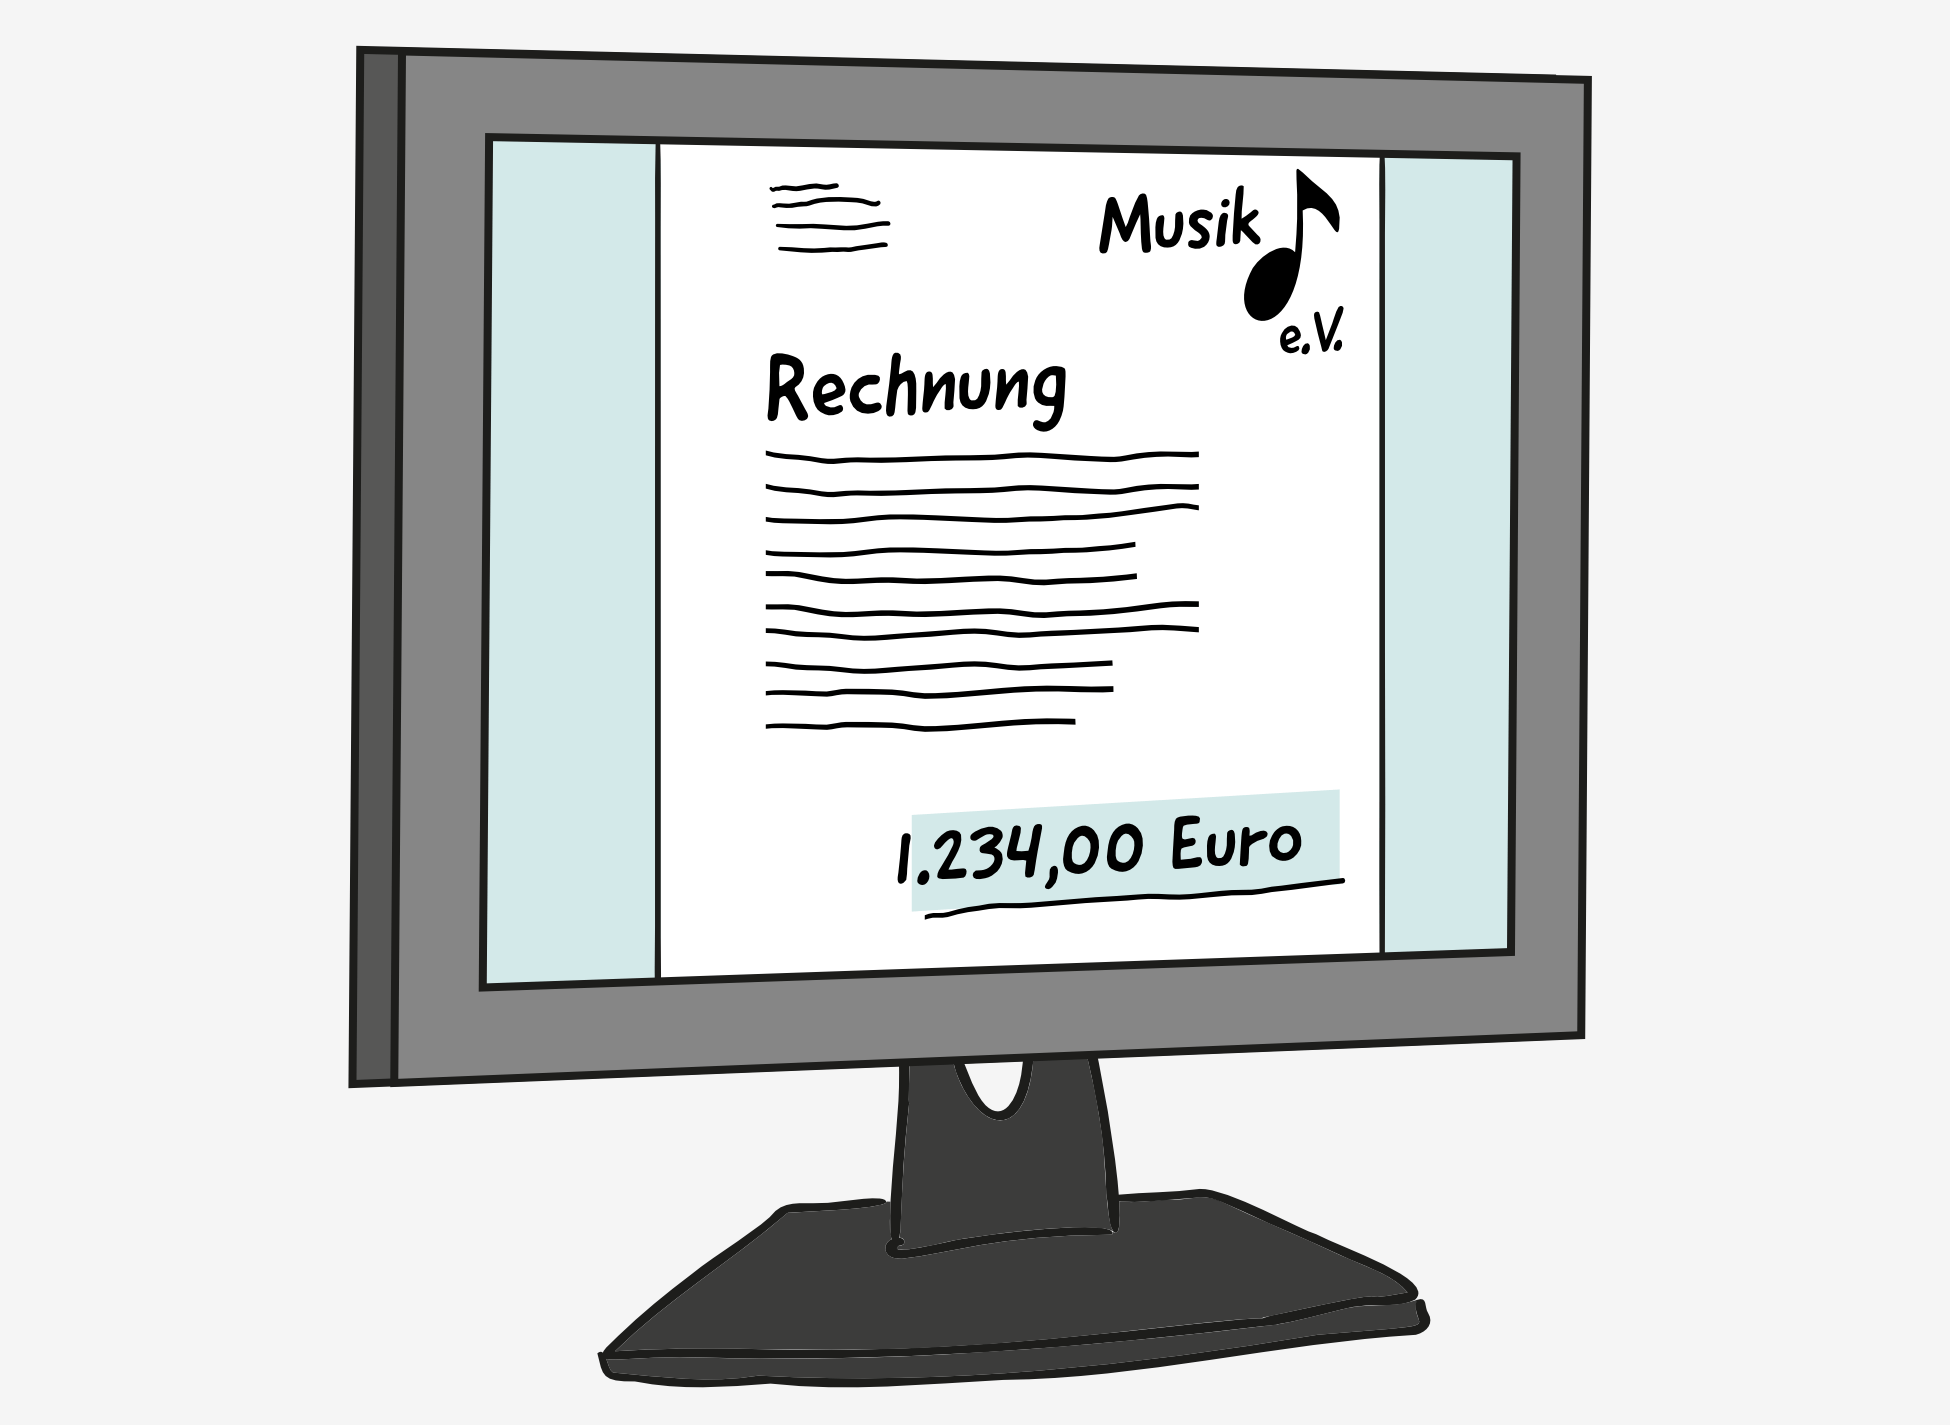 Auf einem Computer-Bildschirm ist ein Dokument abgebildet. Darauf steht groß: Rechnung. Darunter sind Wellen-Linien als Text. Oben links im Dokument sind Wellen-Linien als Anschrift. Oben rechts steht: Musik e.V., mit einem Noten-Symbol. Am unteren Rand steht grün hervorgehoben: 1.234,00 Euro.